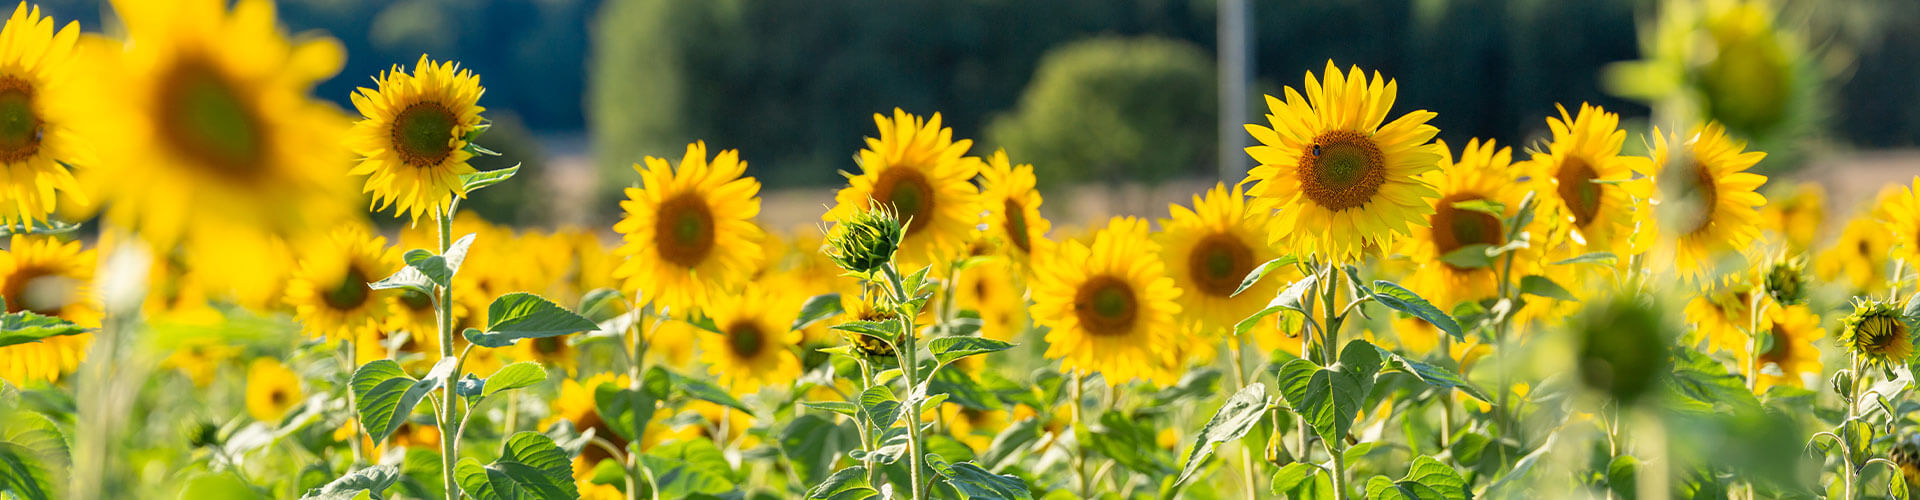 Closeup of a Sunflower Field